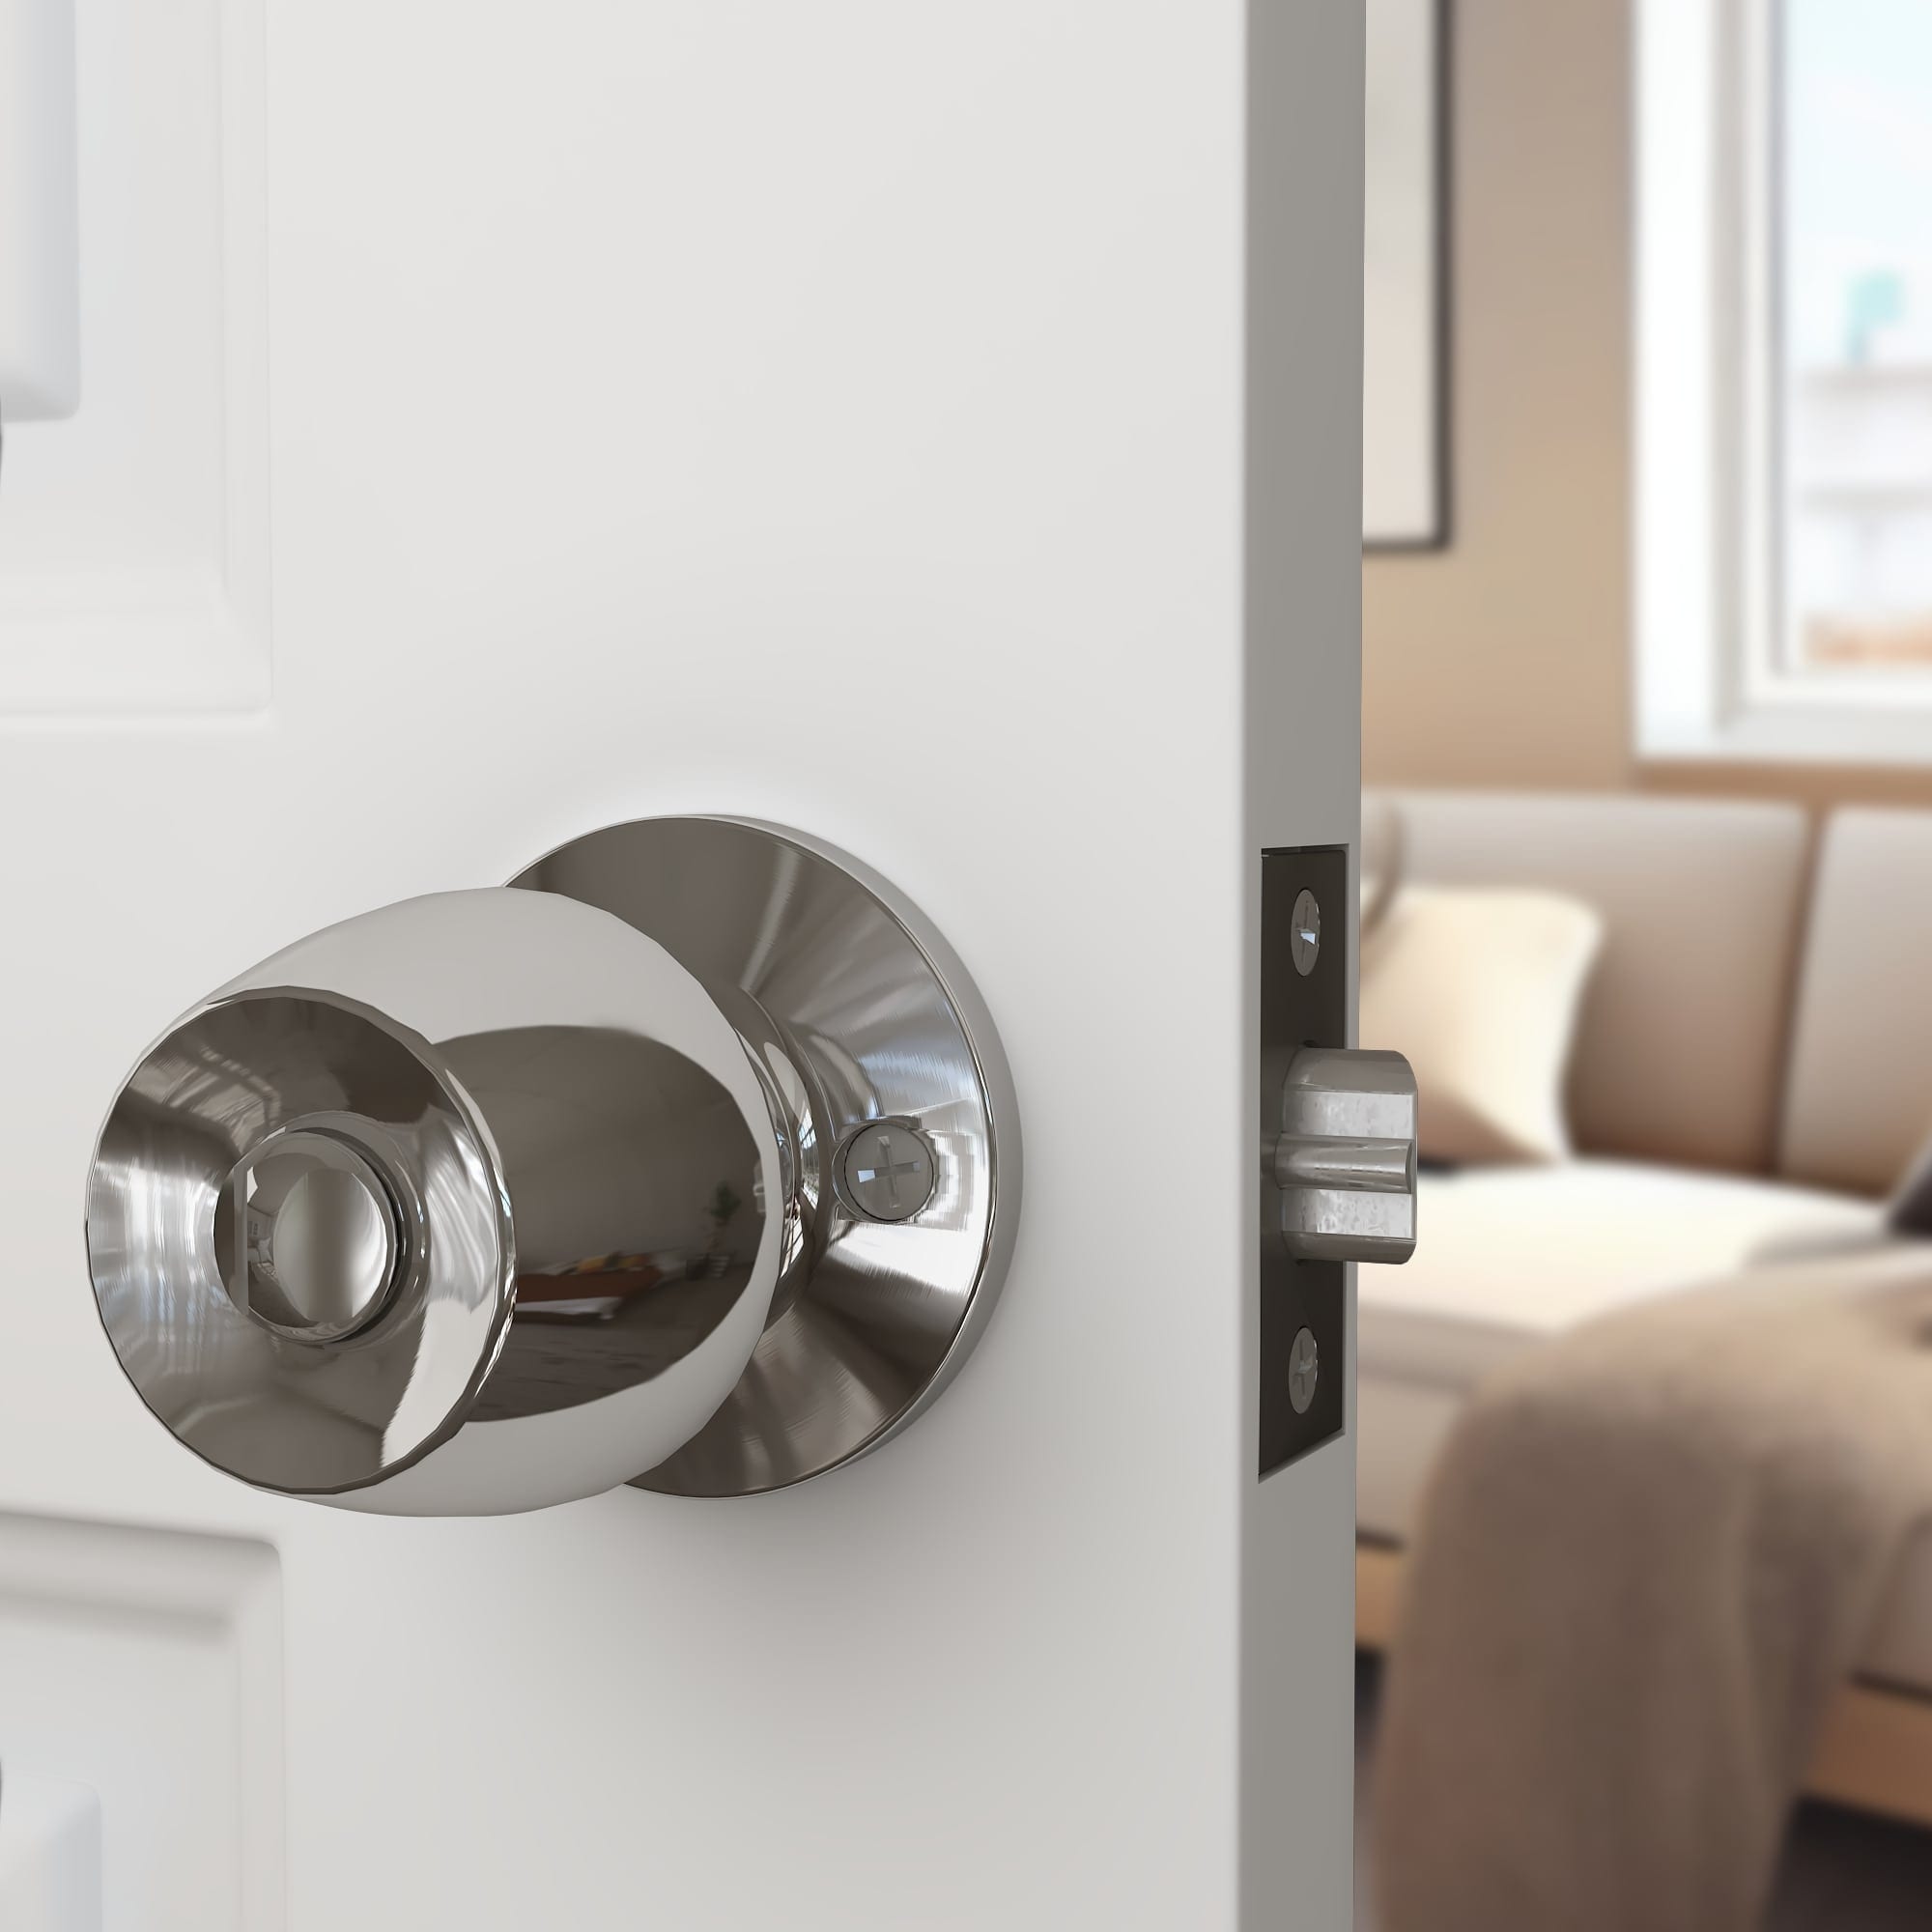 Kwikset Security Balboa Satin Nickel Universal Interior Bed/Bath Privacy Door  Handle in the Door Handles department at